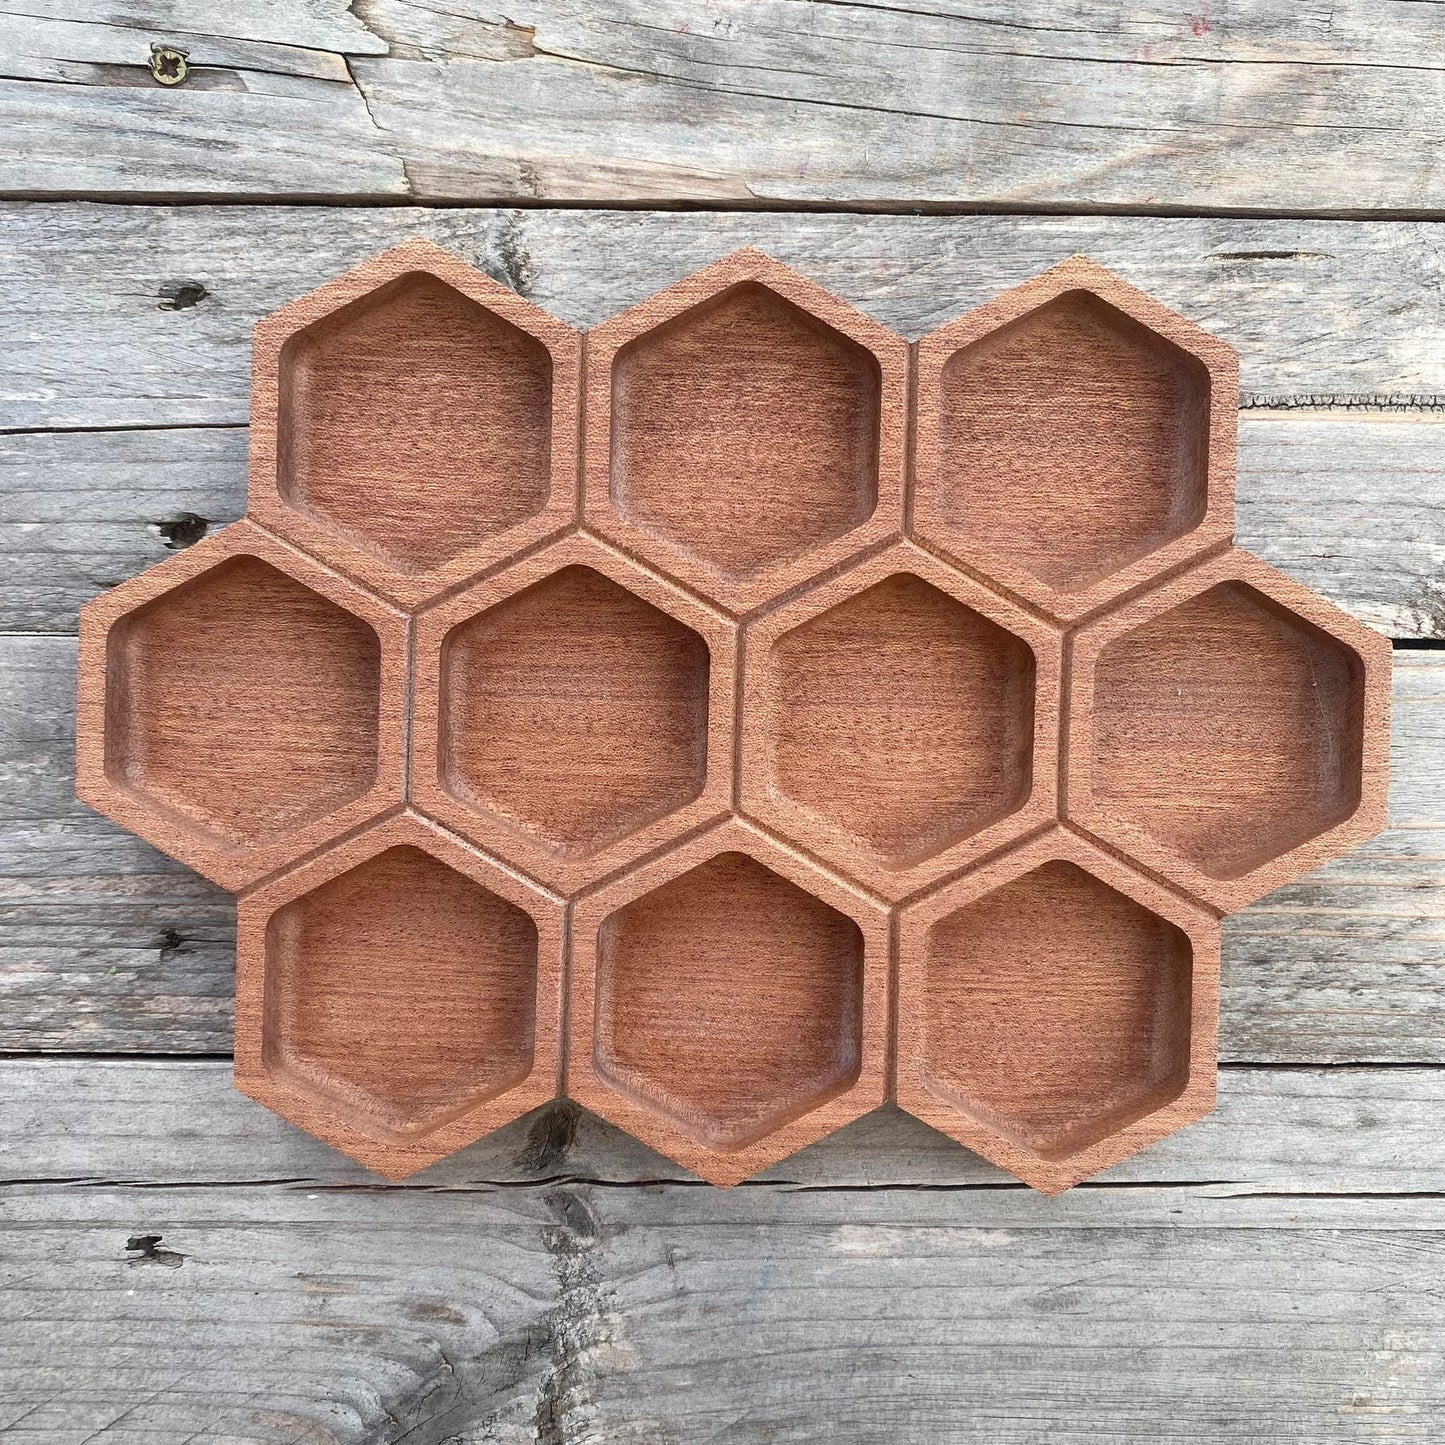 DrawMe Honeycomb Sensory Tray